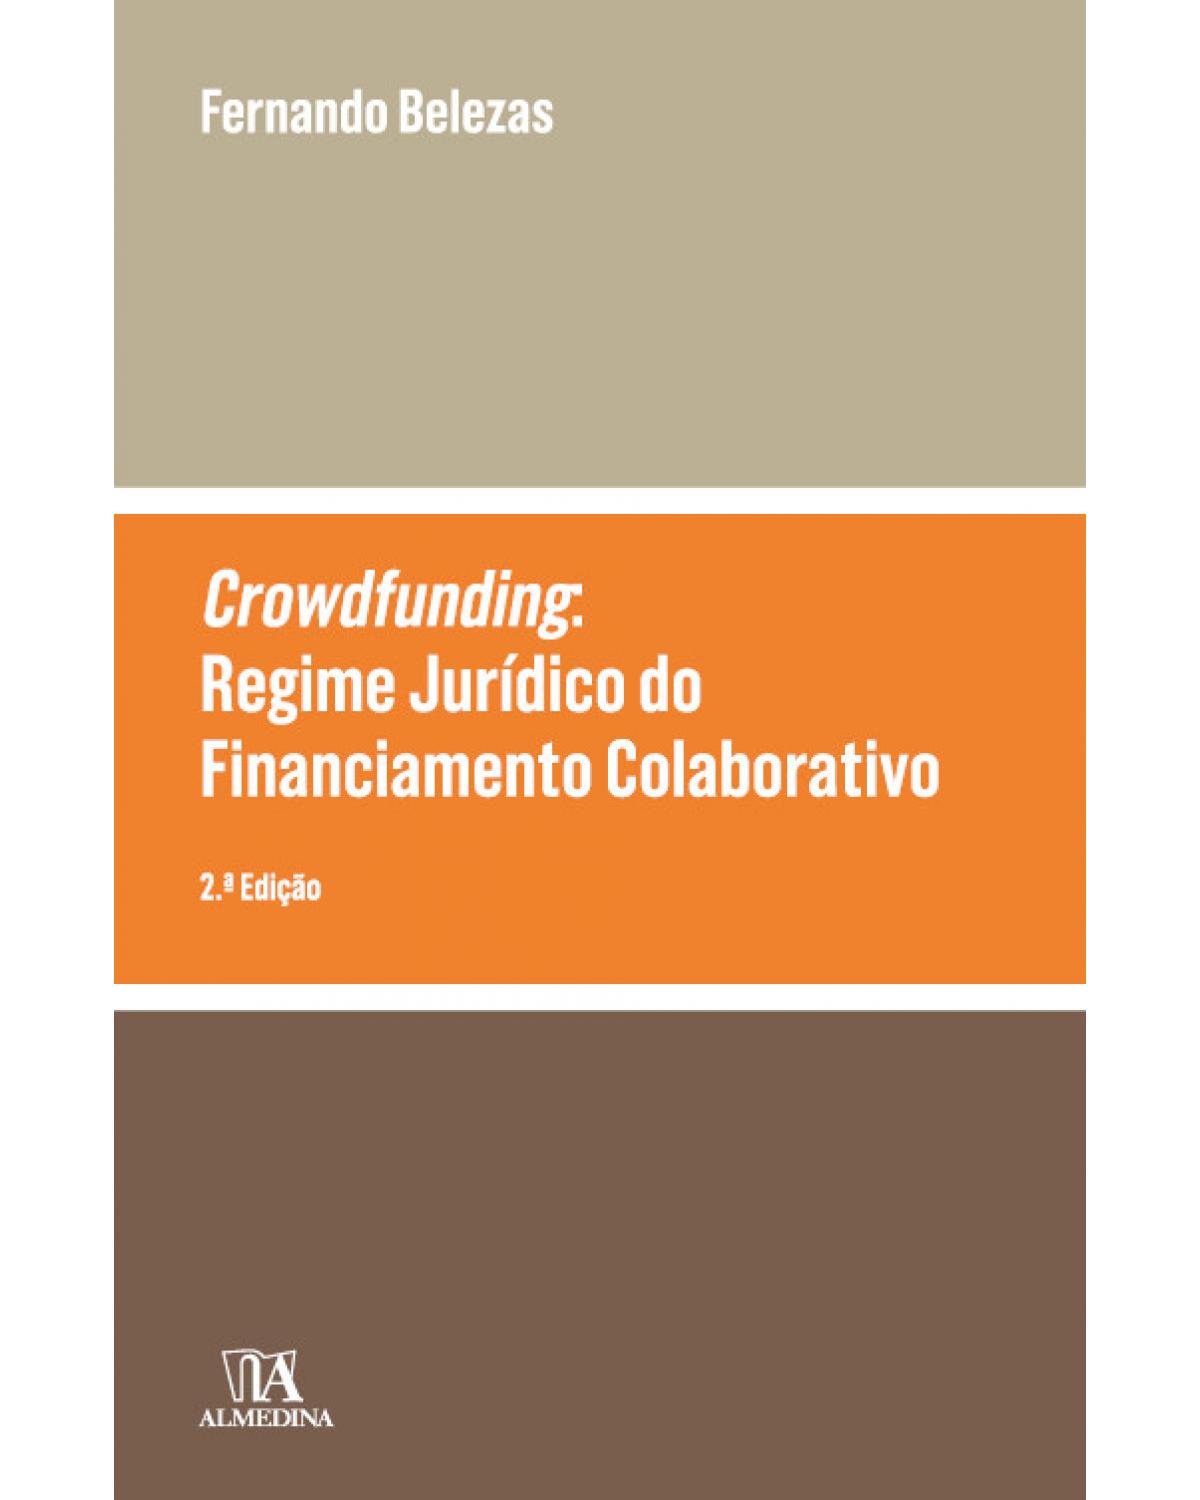 Crowdfunding: O regime jurídico do financiamento colaborativo - 2ª Edição